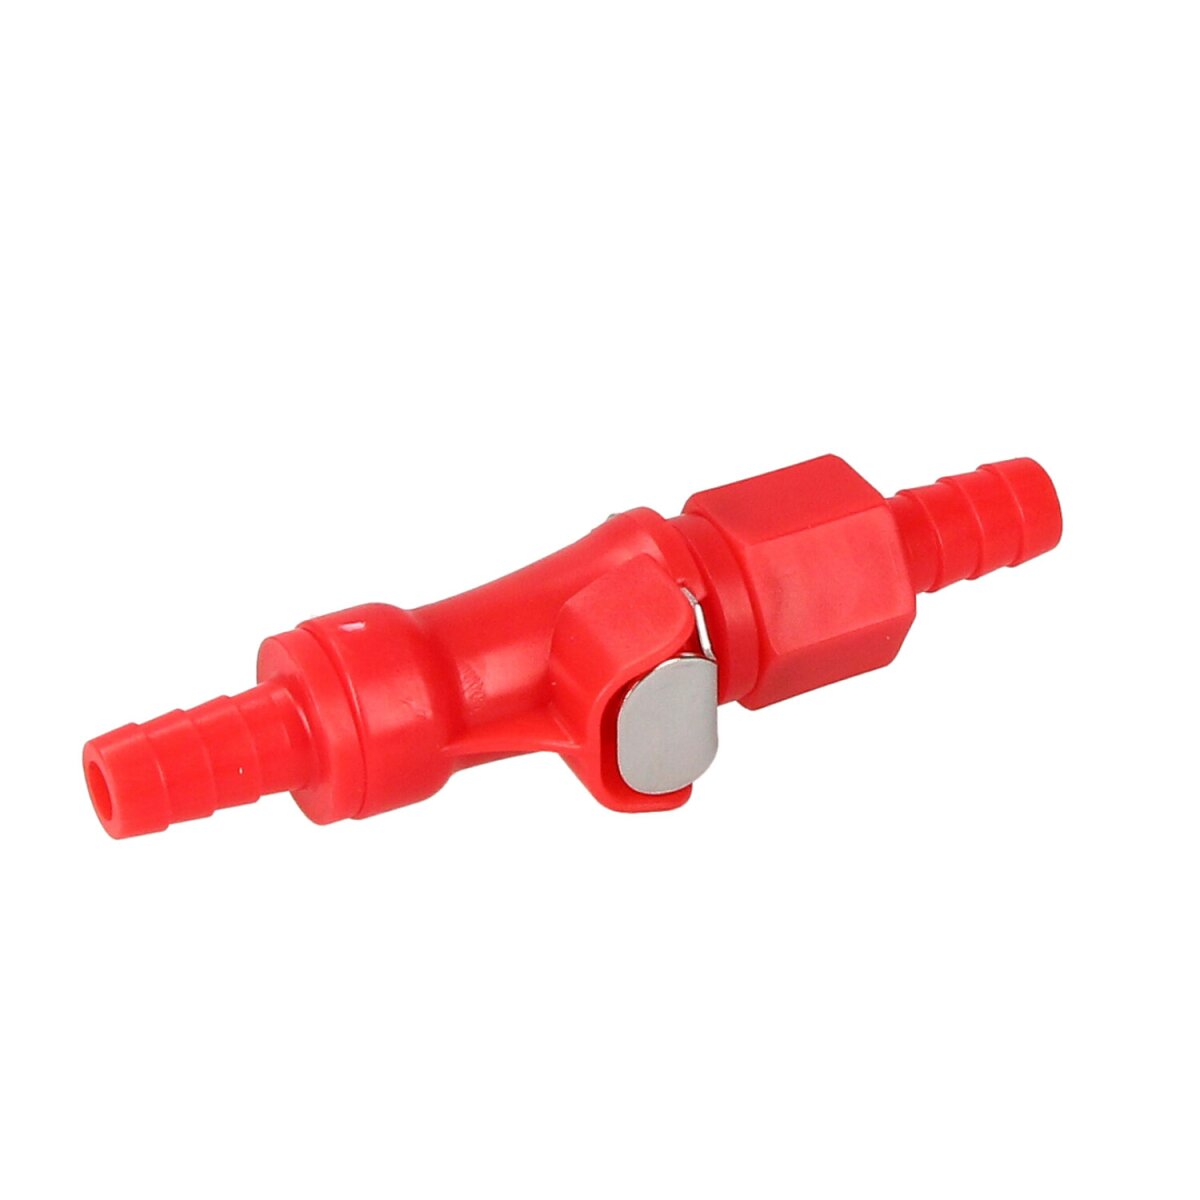 Steckkupplung (Benzinschlauchkupplung) rot für Benzinschlauch 8mm